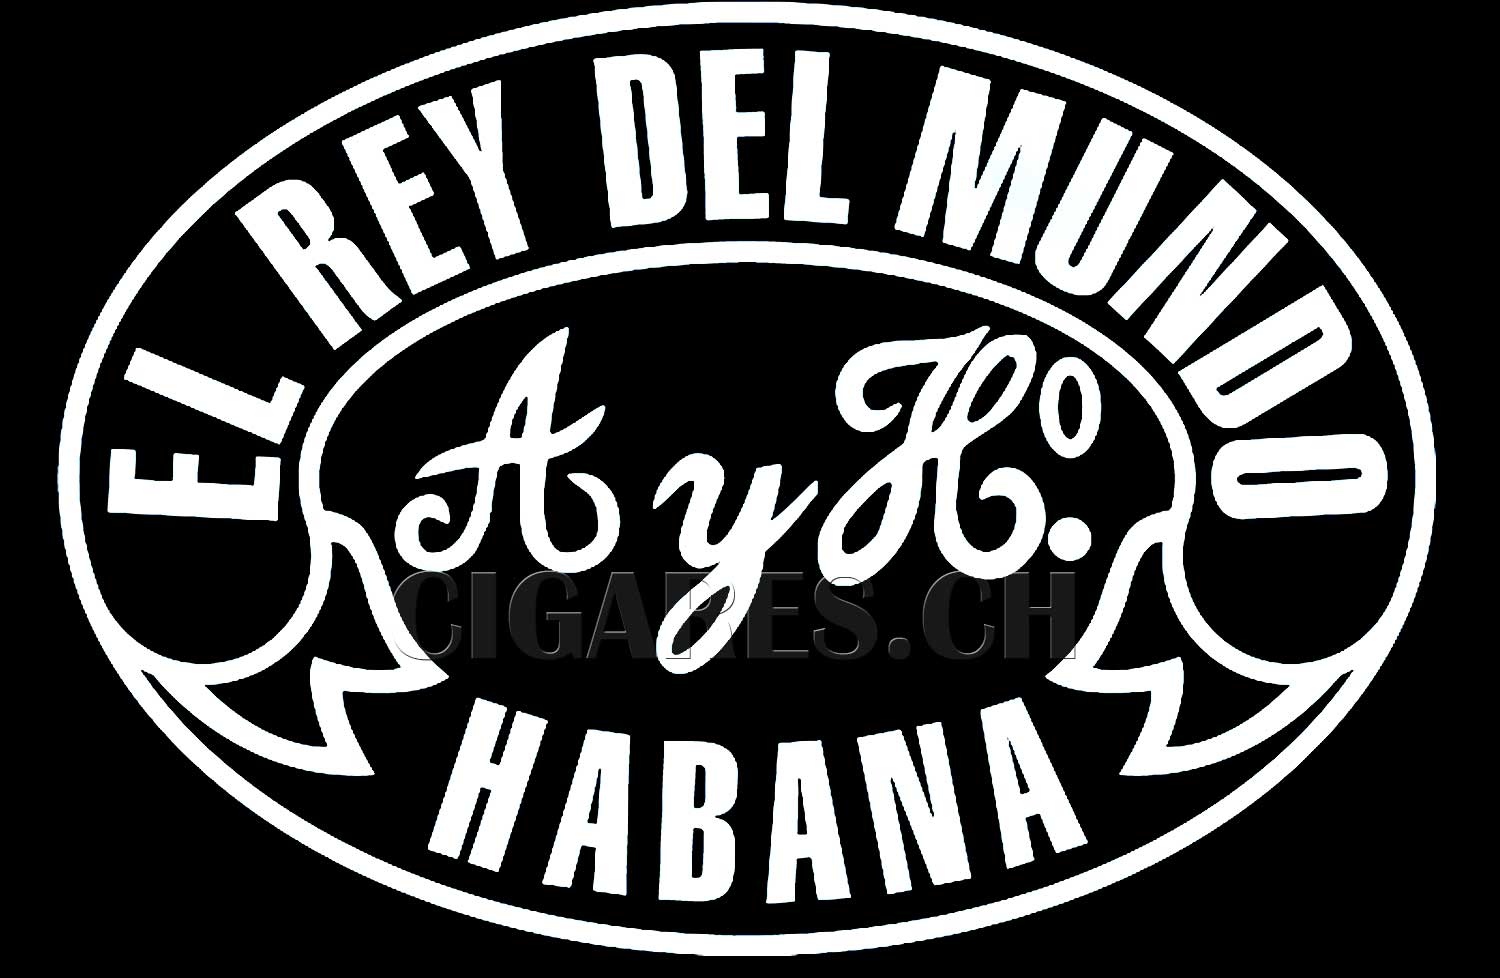 Cigares El Rey Del Mundo logo